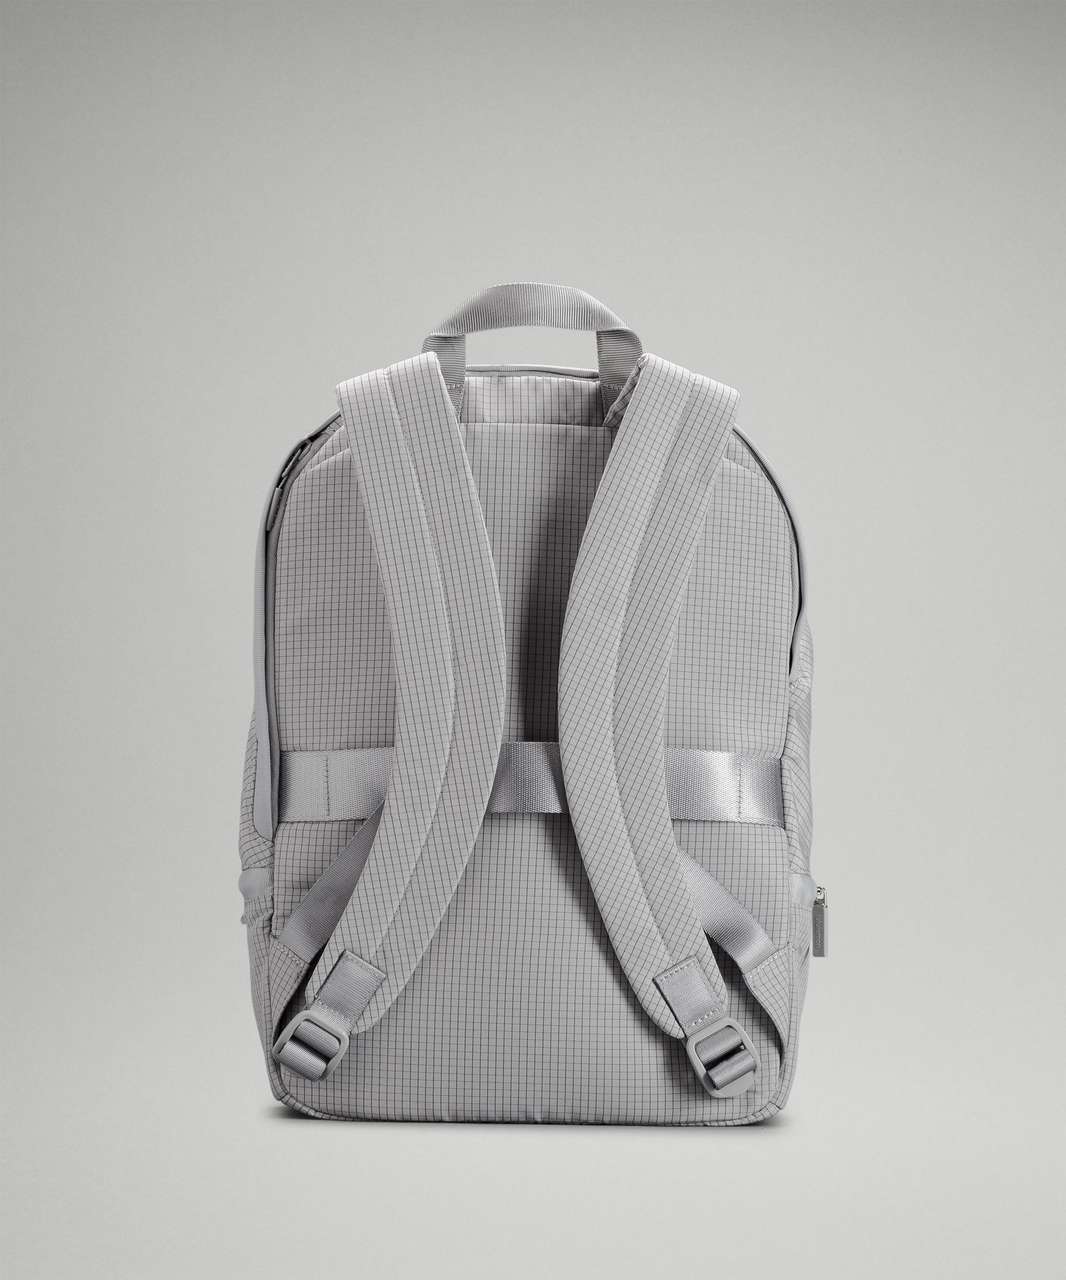 Lululemon City Adventurer Backpack 20L - Seal Grey / Graphite Grey